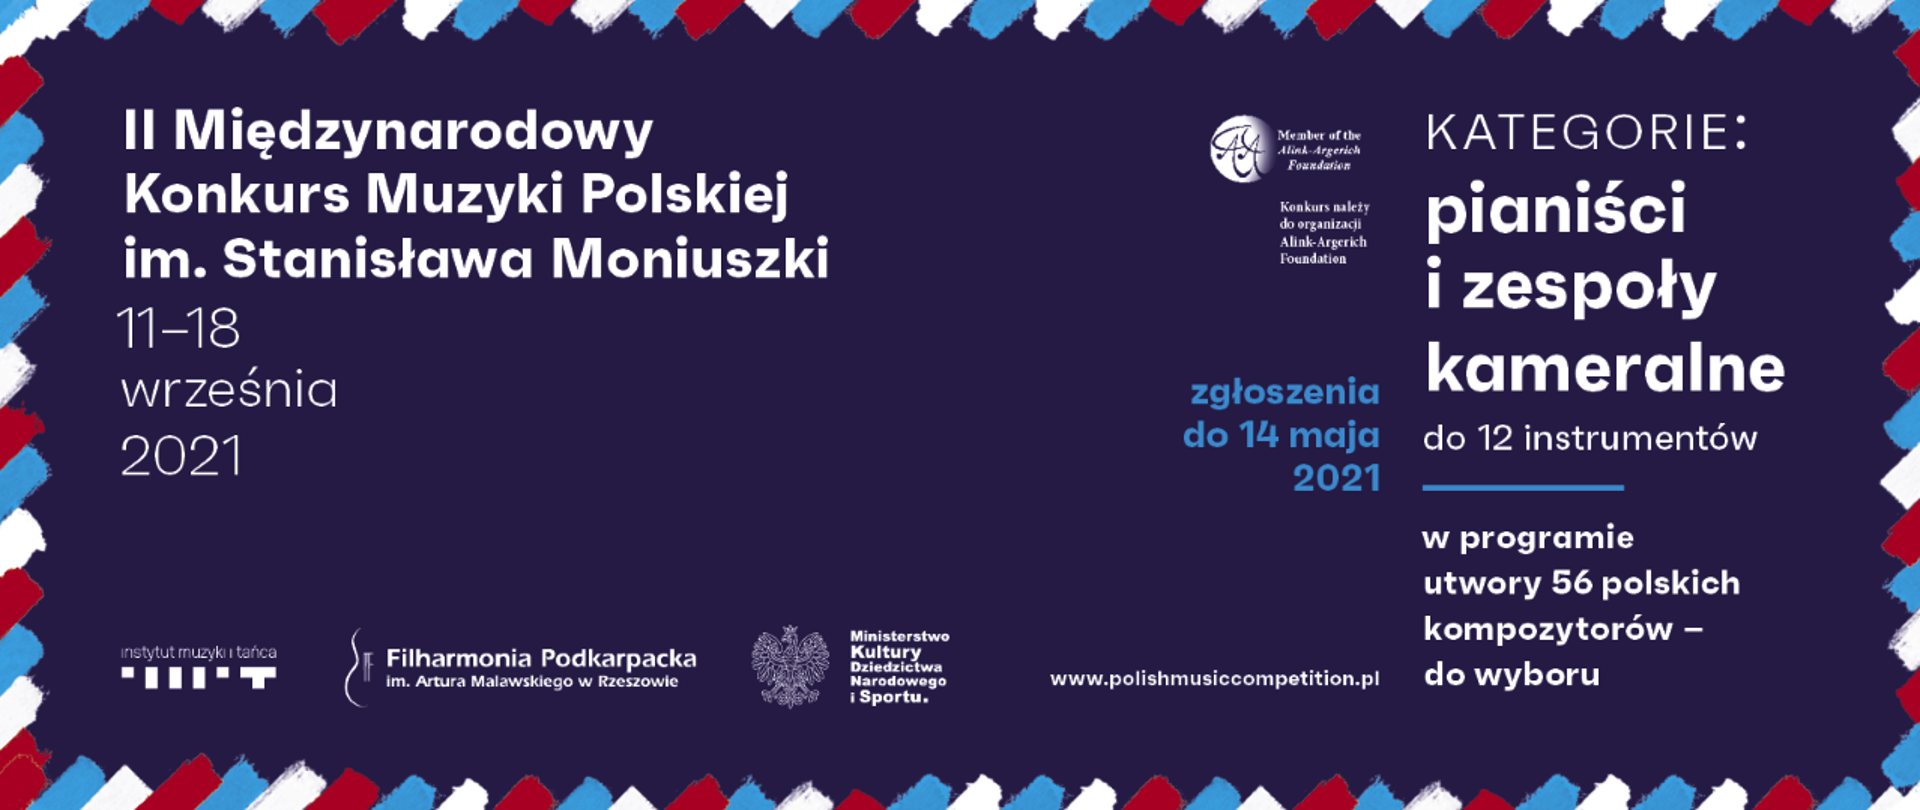 Konkurs_Muzyki_Polskiej_im_Moniuszki